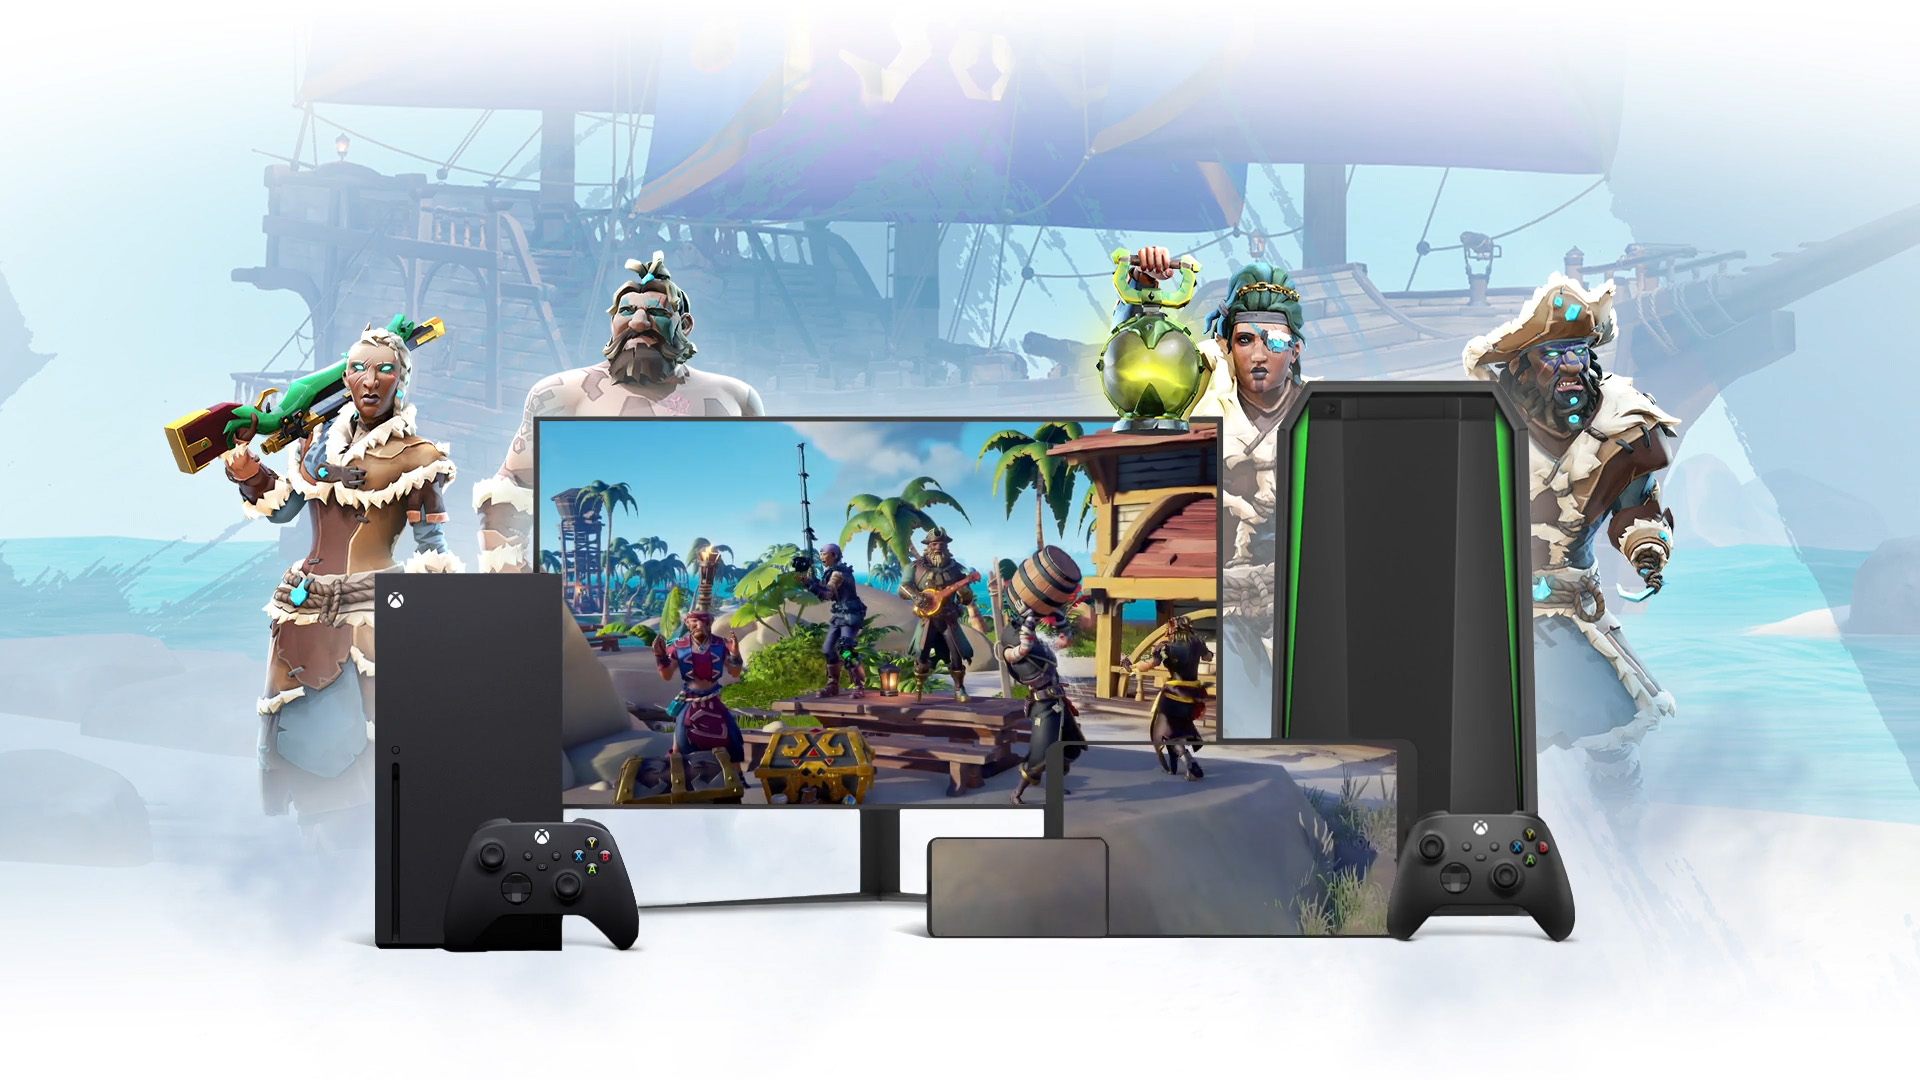 Plano de fundo de com um navio pirata com personagens de Sea of Thieves à volta de um portátil, de uma televisão e de um dispositivo móvel.